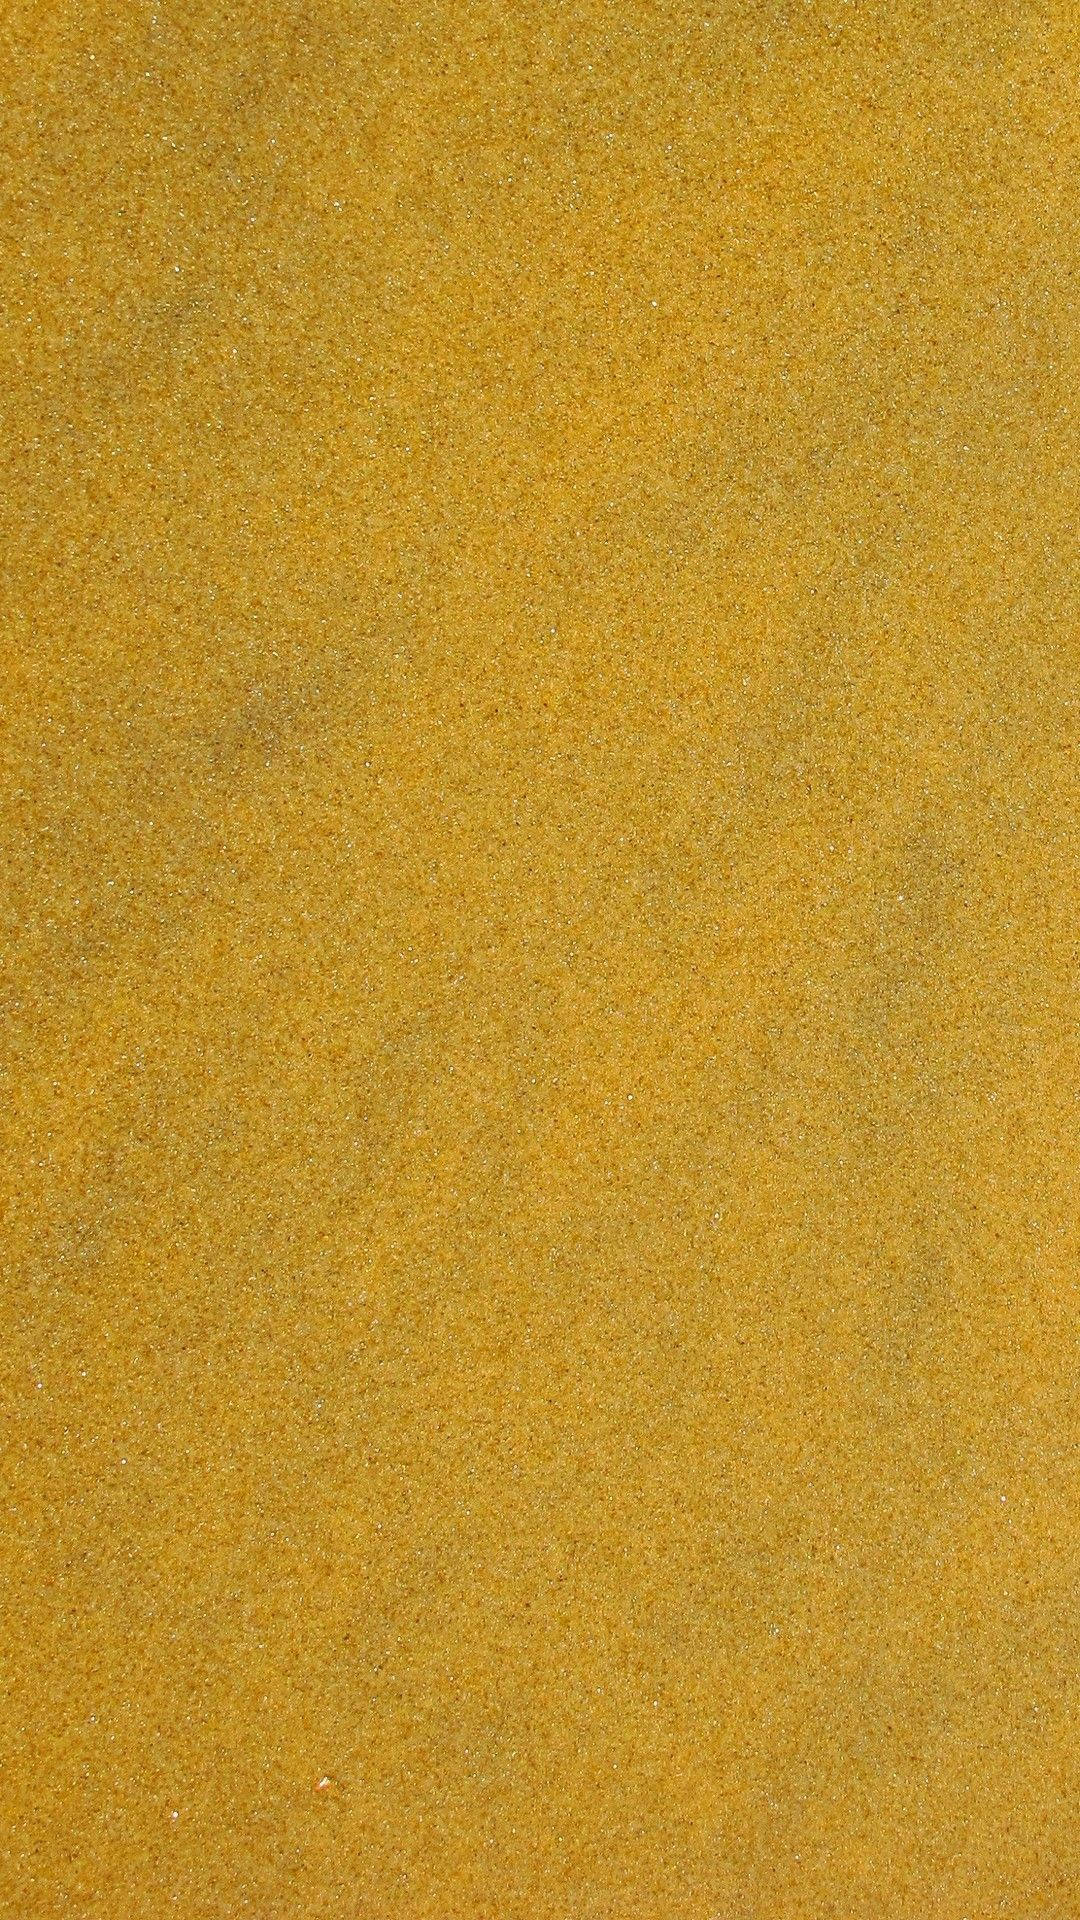 Plain Gold Texture Iphone Wallpaper